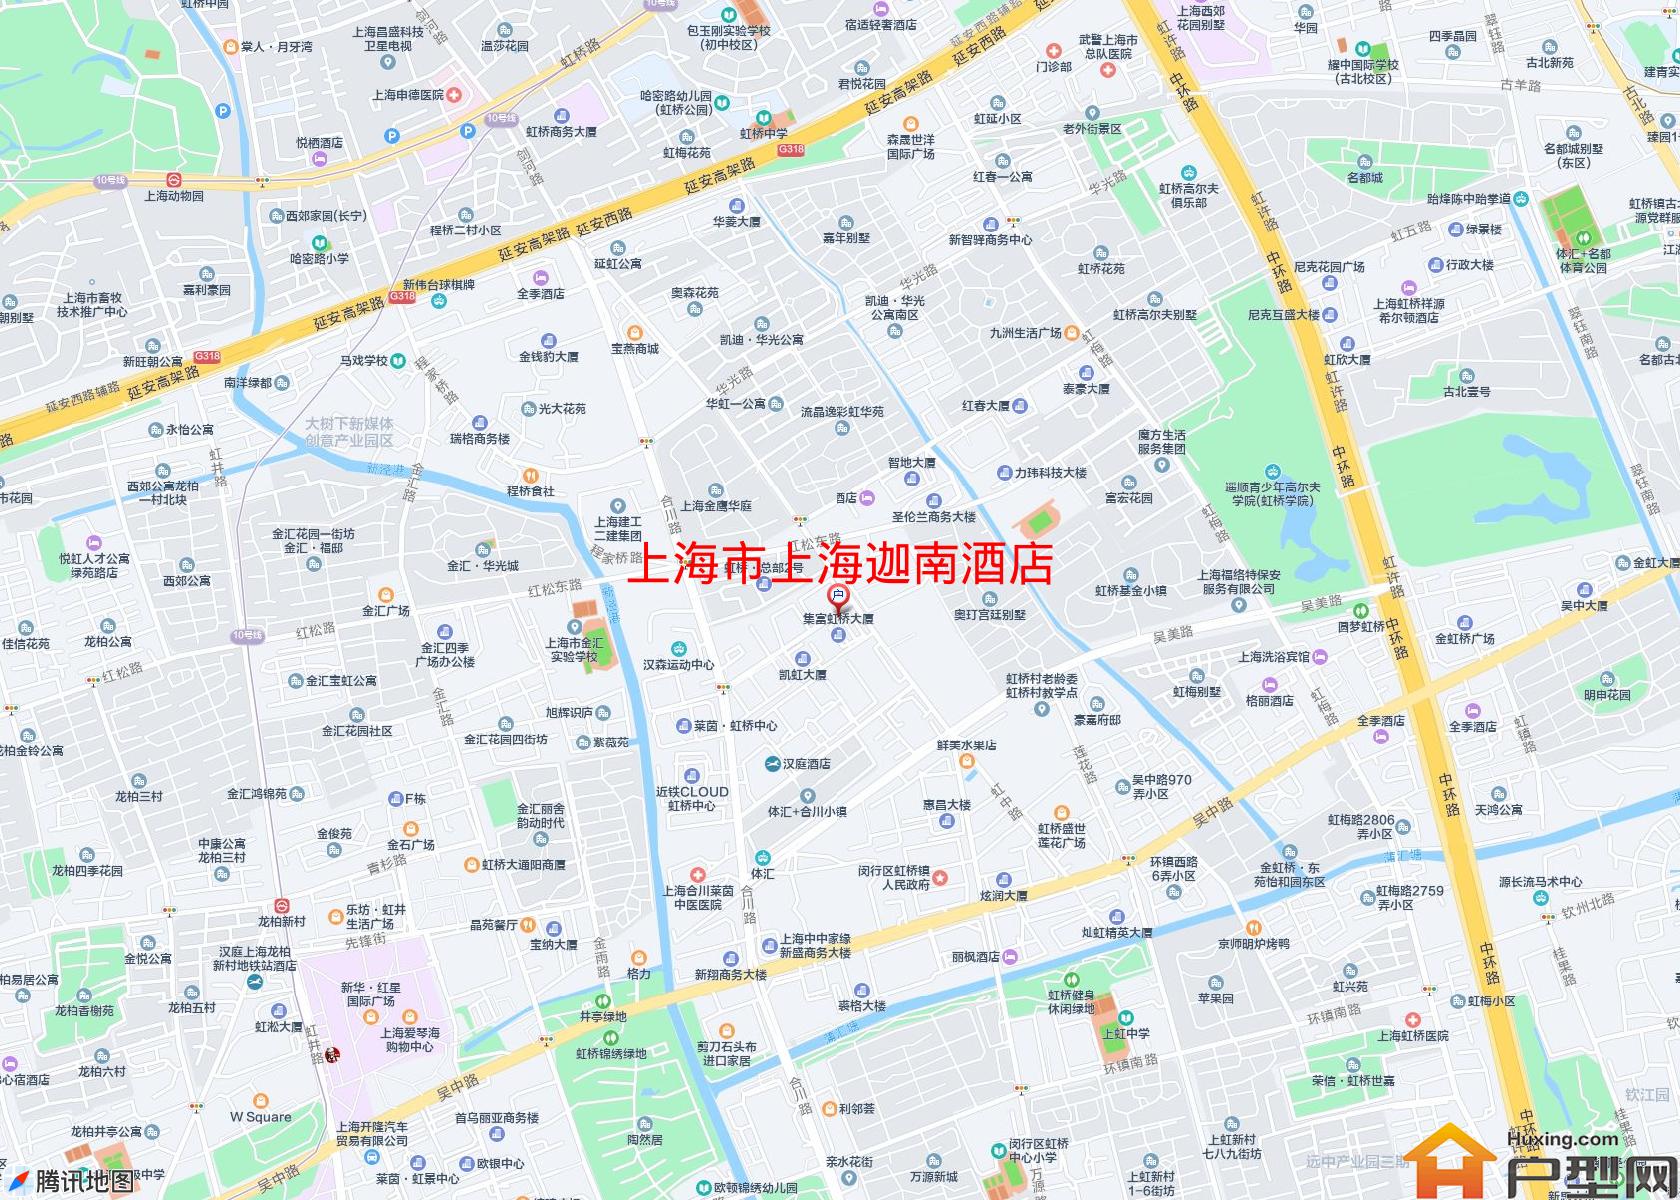 上海迦南酒店小区 - 户型网